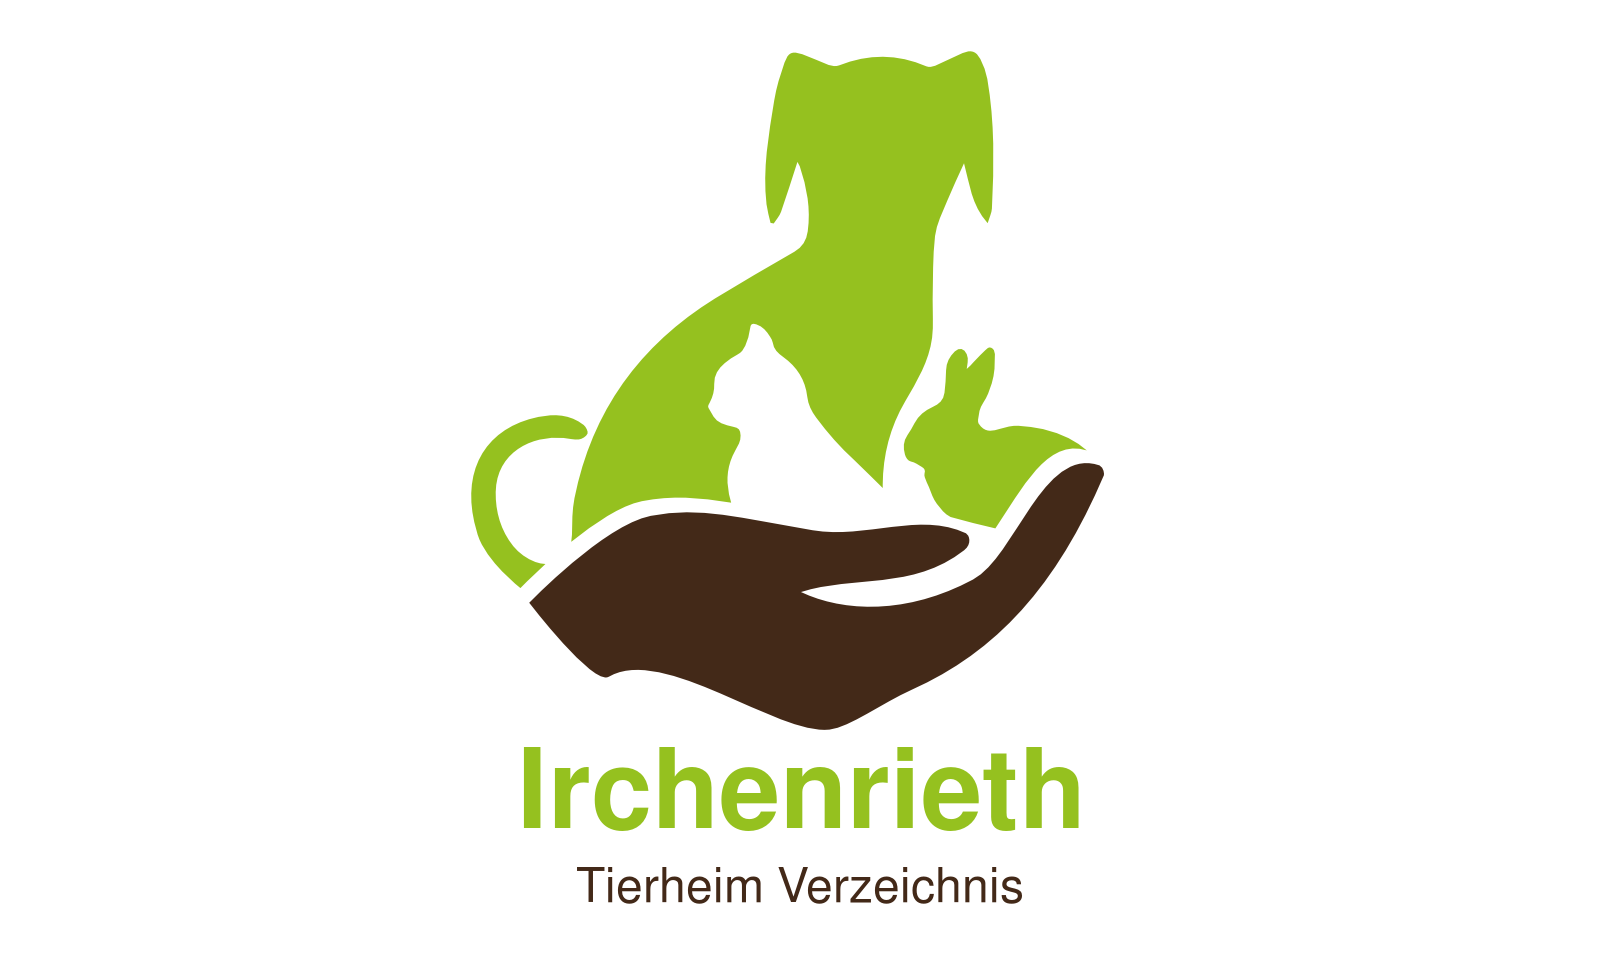 Tierheim Irchenrieth